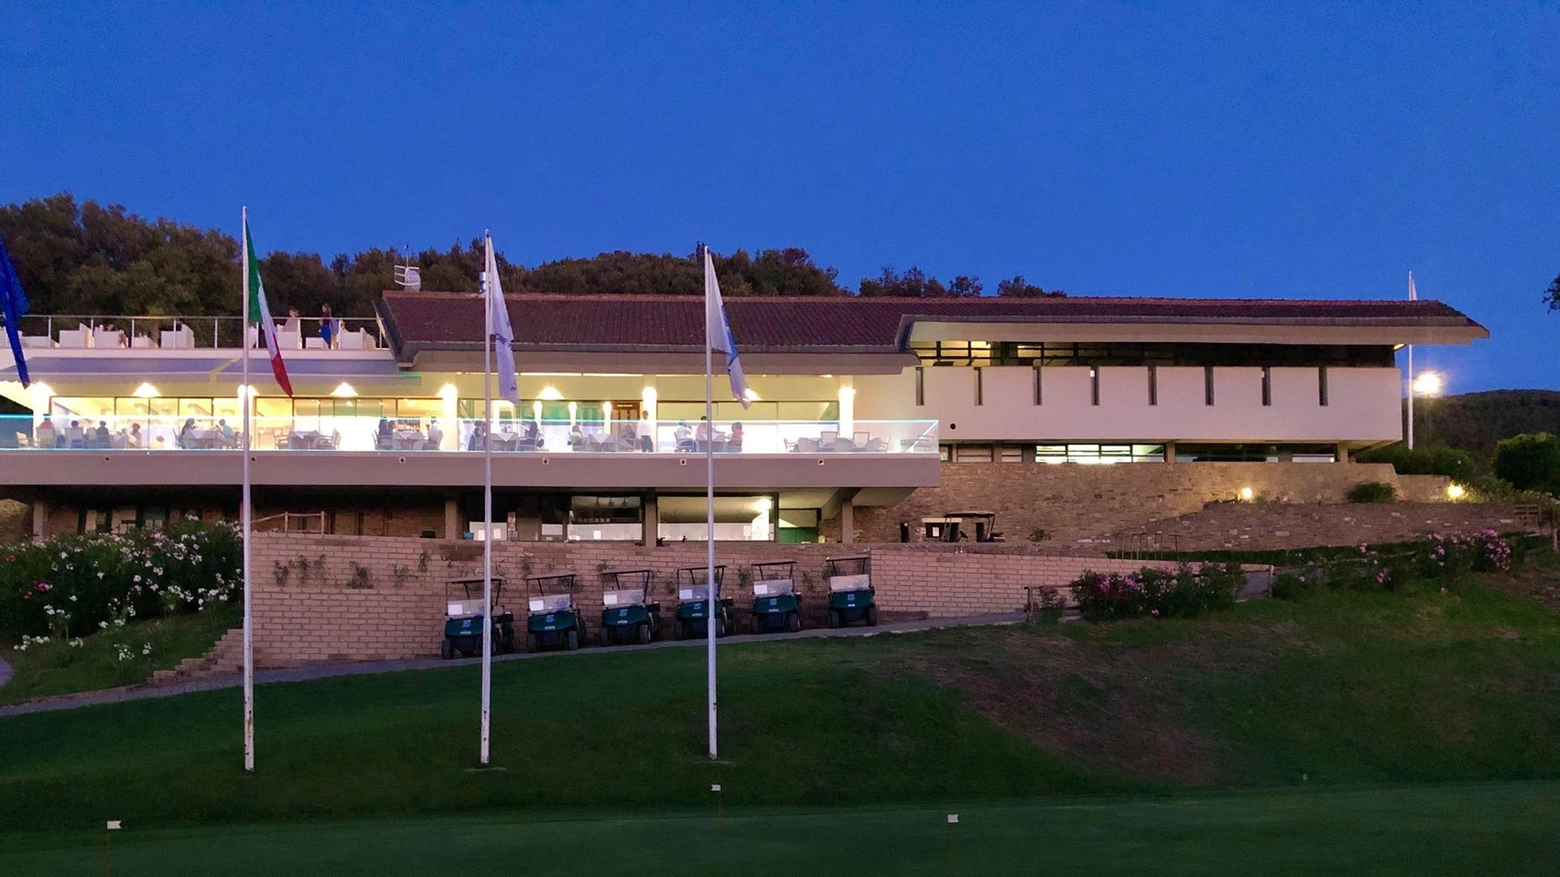 Il Golf Club Punta Ala si prepara per la 41ª edizione della prestigiosa "Coppa Ruffino", parte del "Grande Slam" del club. La gara si svolgerà il 3 agosto con premi e degustazione dei vini Ruffino. Ultimi vincitori: Allegra Rocchetti e Luca Bertucci.